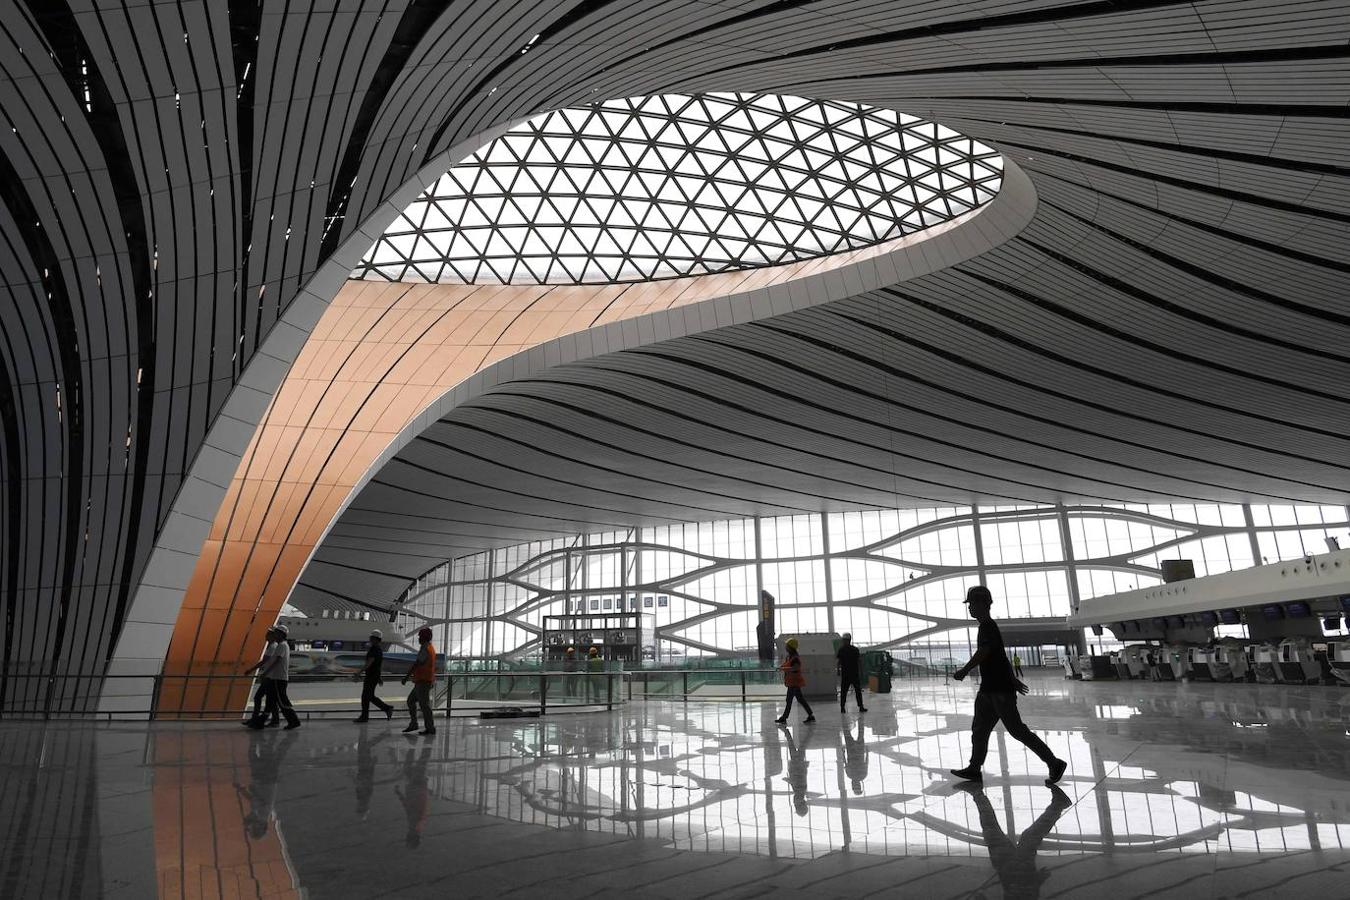 El aeropuerto internacional de Beijing Daxing, el mayor del mundo. Tiene siete pistas y una terminal en forma de estrella que ocupa casi cien campos de fútbol